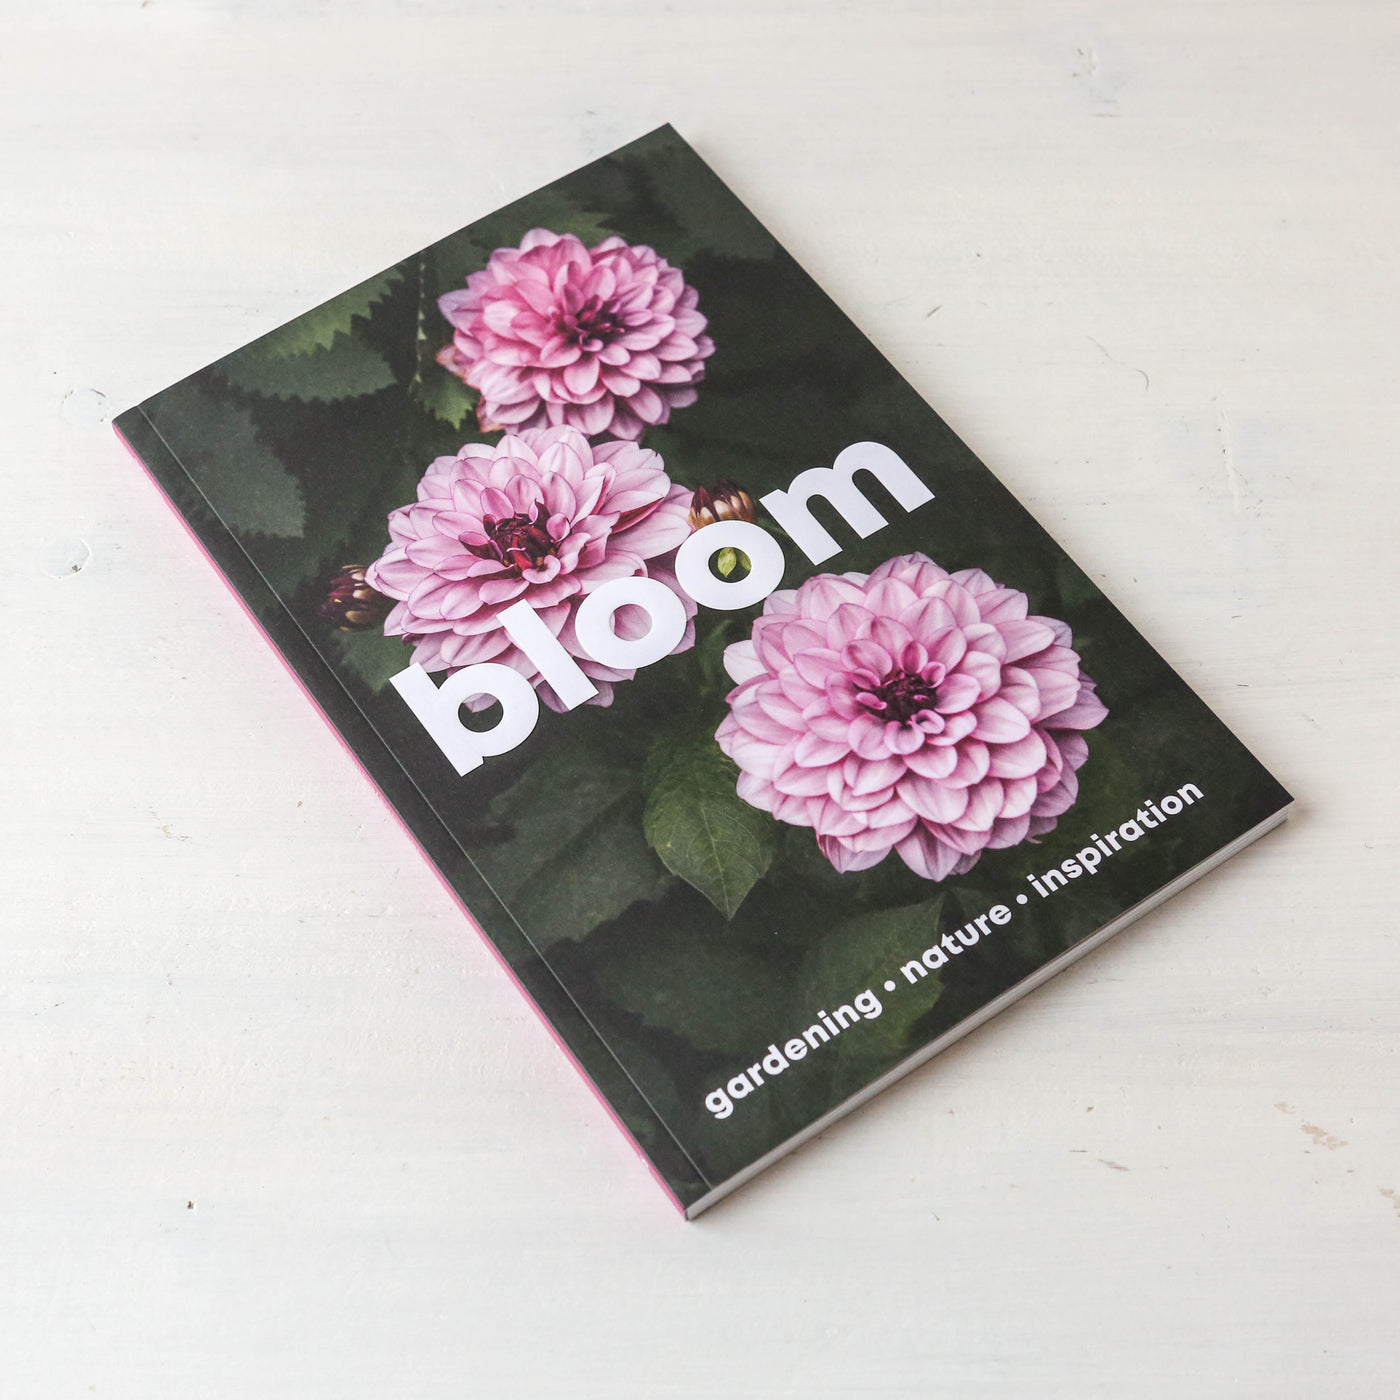 Bloom Magazine Issue 16